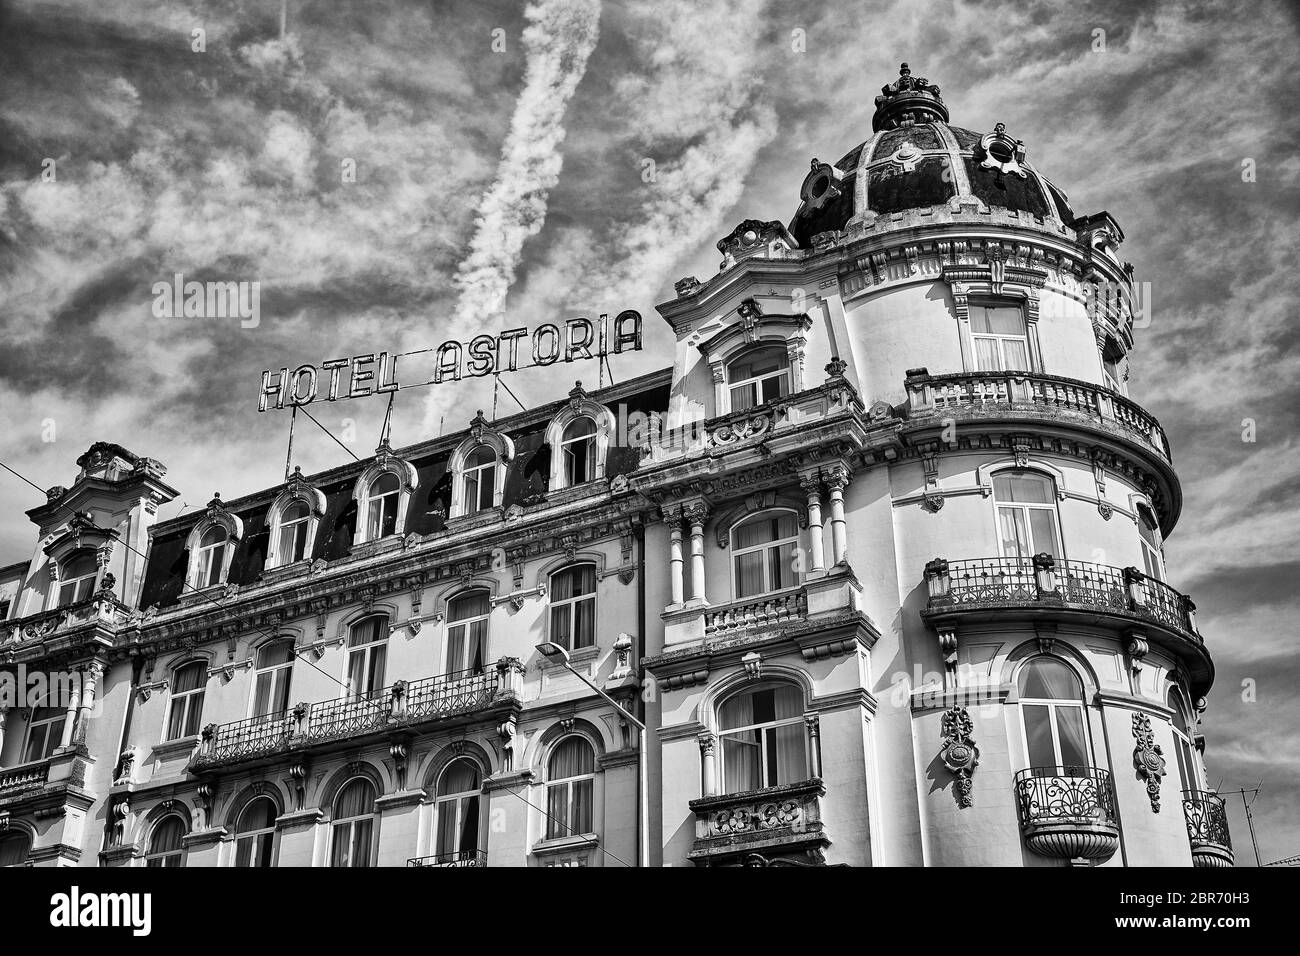 L'Hotel Astoria, situato nella città vecchia di Coimbra, in Portogallo, è il più bel vecchio hotel della città. Foto Stock